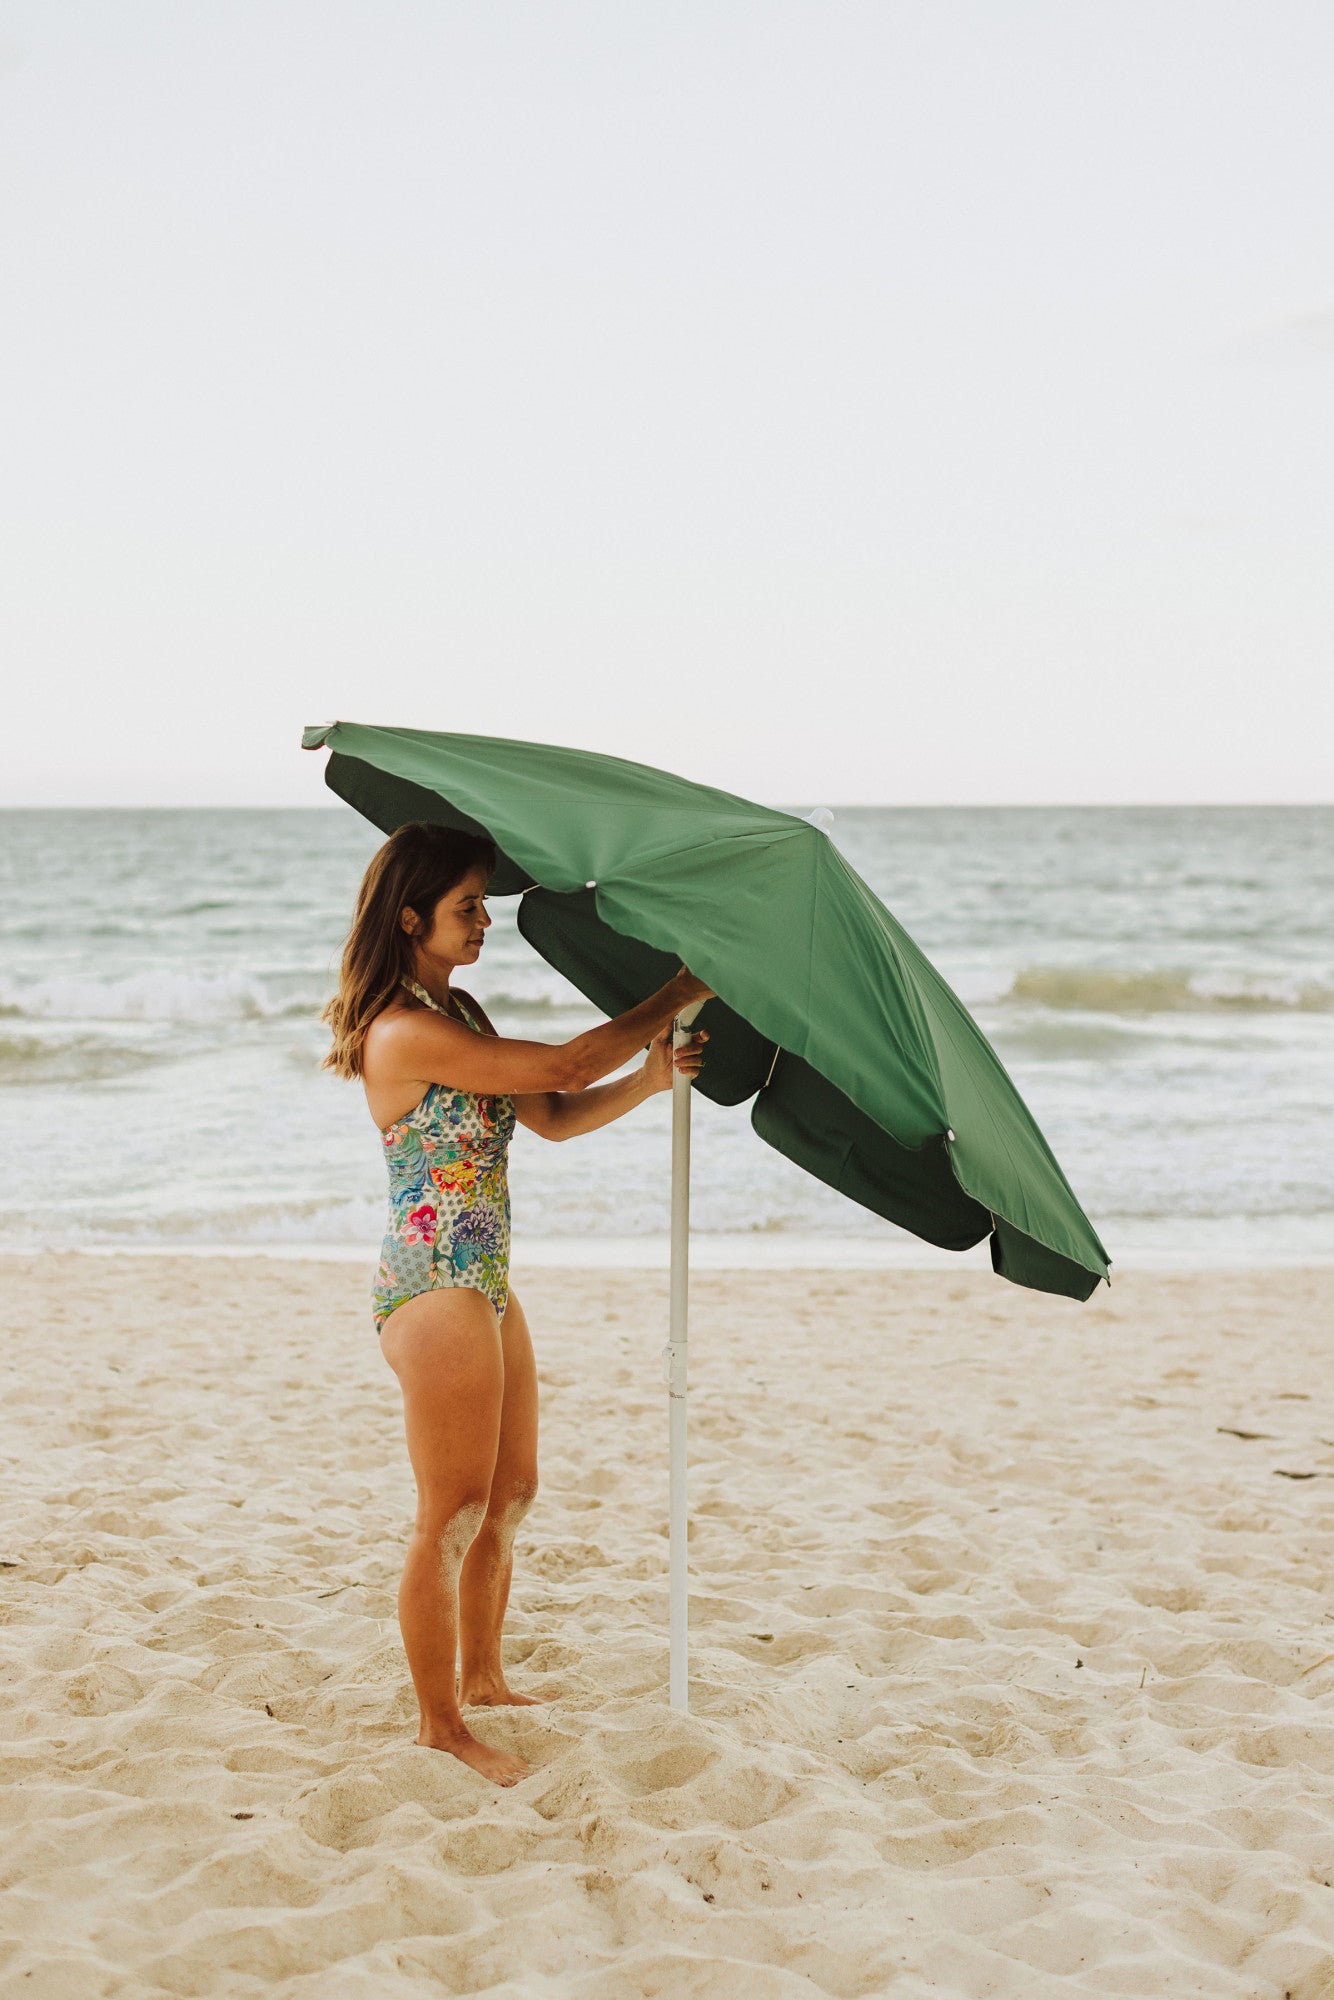 Baylor Bears - 5.5 Ft. Portable Beach Umbrella